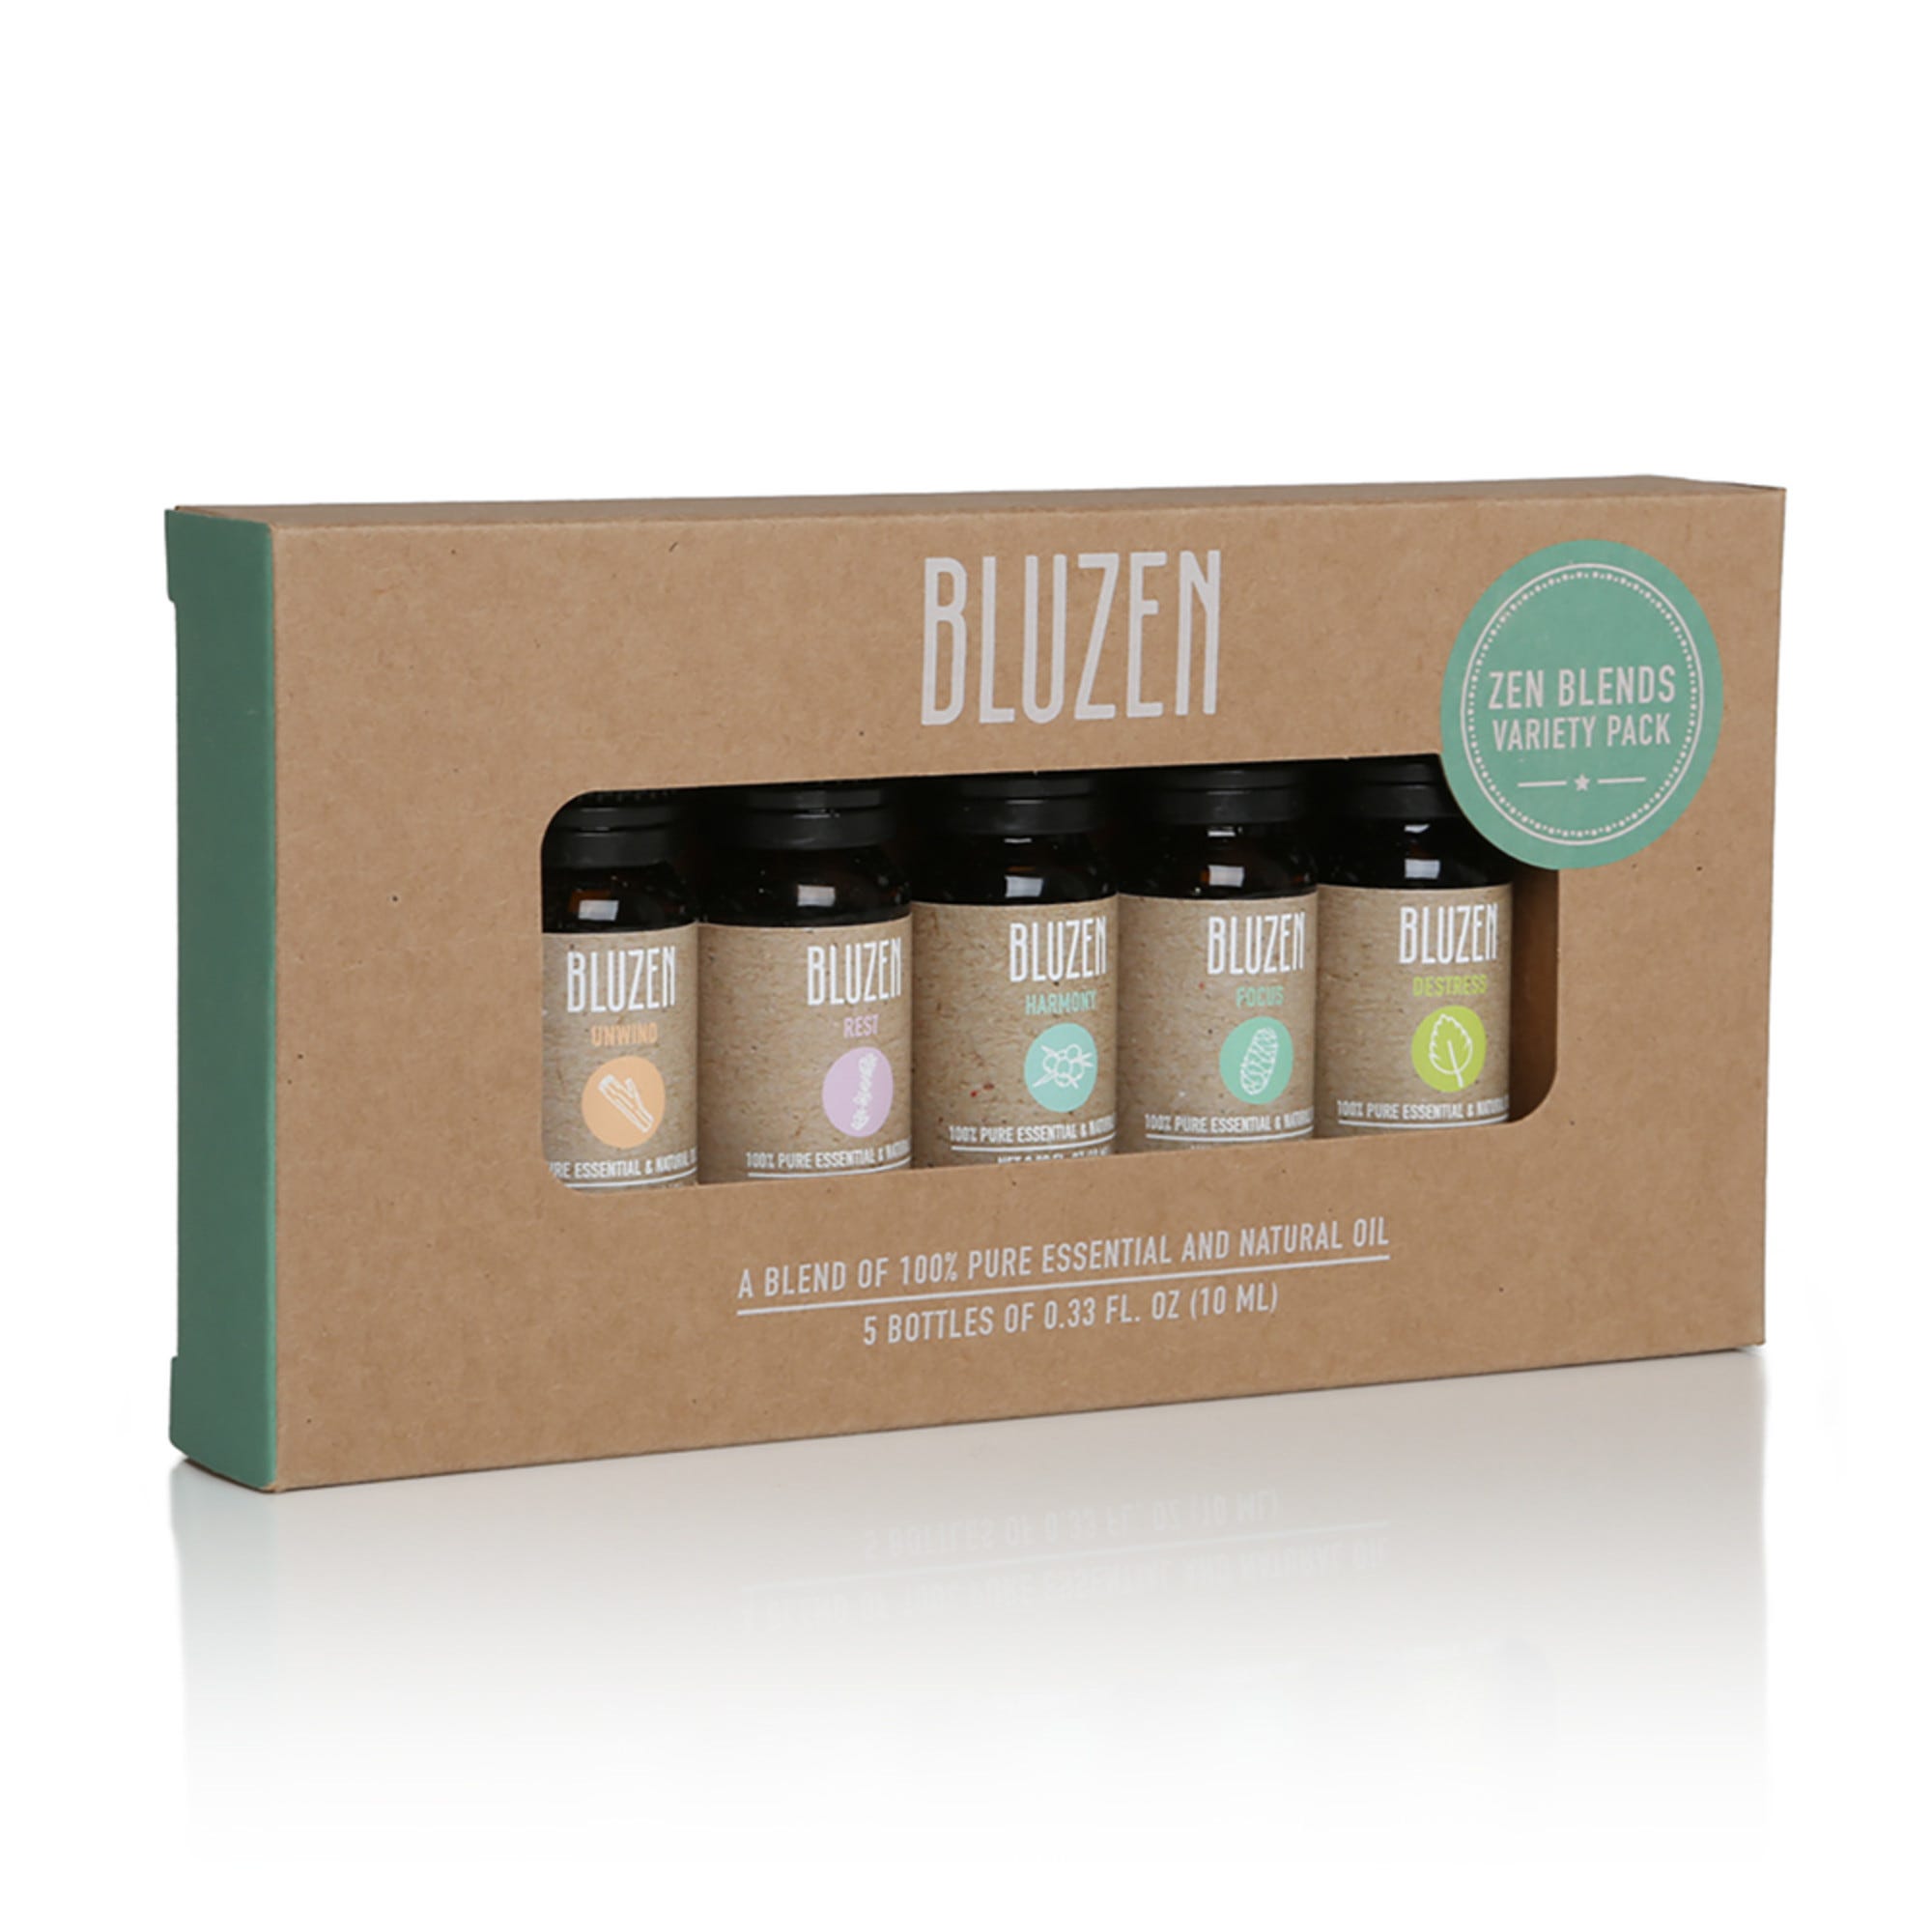 BluZen Zen Blends Essential Oils - Unwind, Rest, Harmony, Focus, Destressed, 10mL - 5 ct